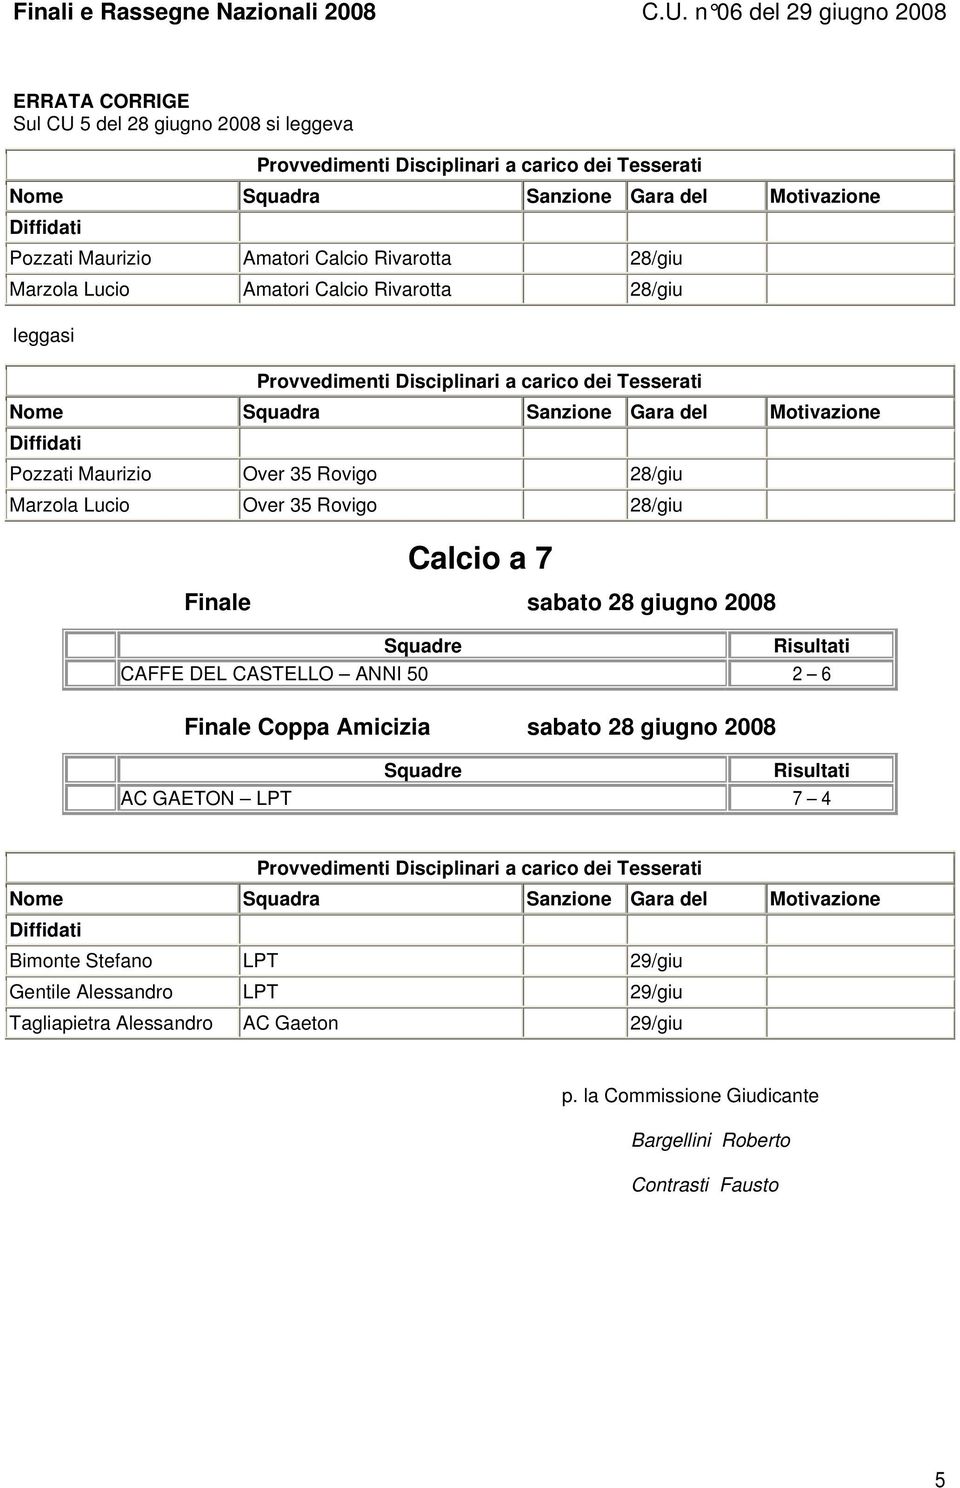 giugno 2008 CAFFE DEL CASTELLO ANNI 50 2 6 Finale Coppa Amicizia sabato 28 giugno 2008 AC GAETON LPT 7 4 Bimonte Stefano LPT 29/giu